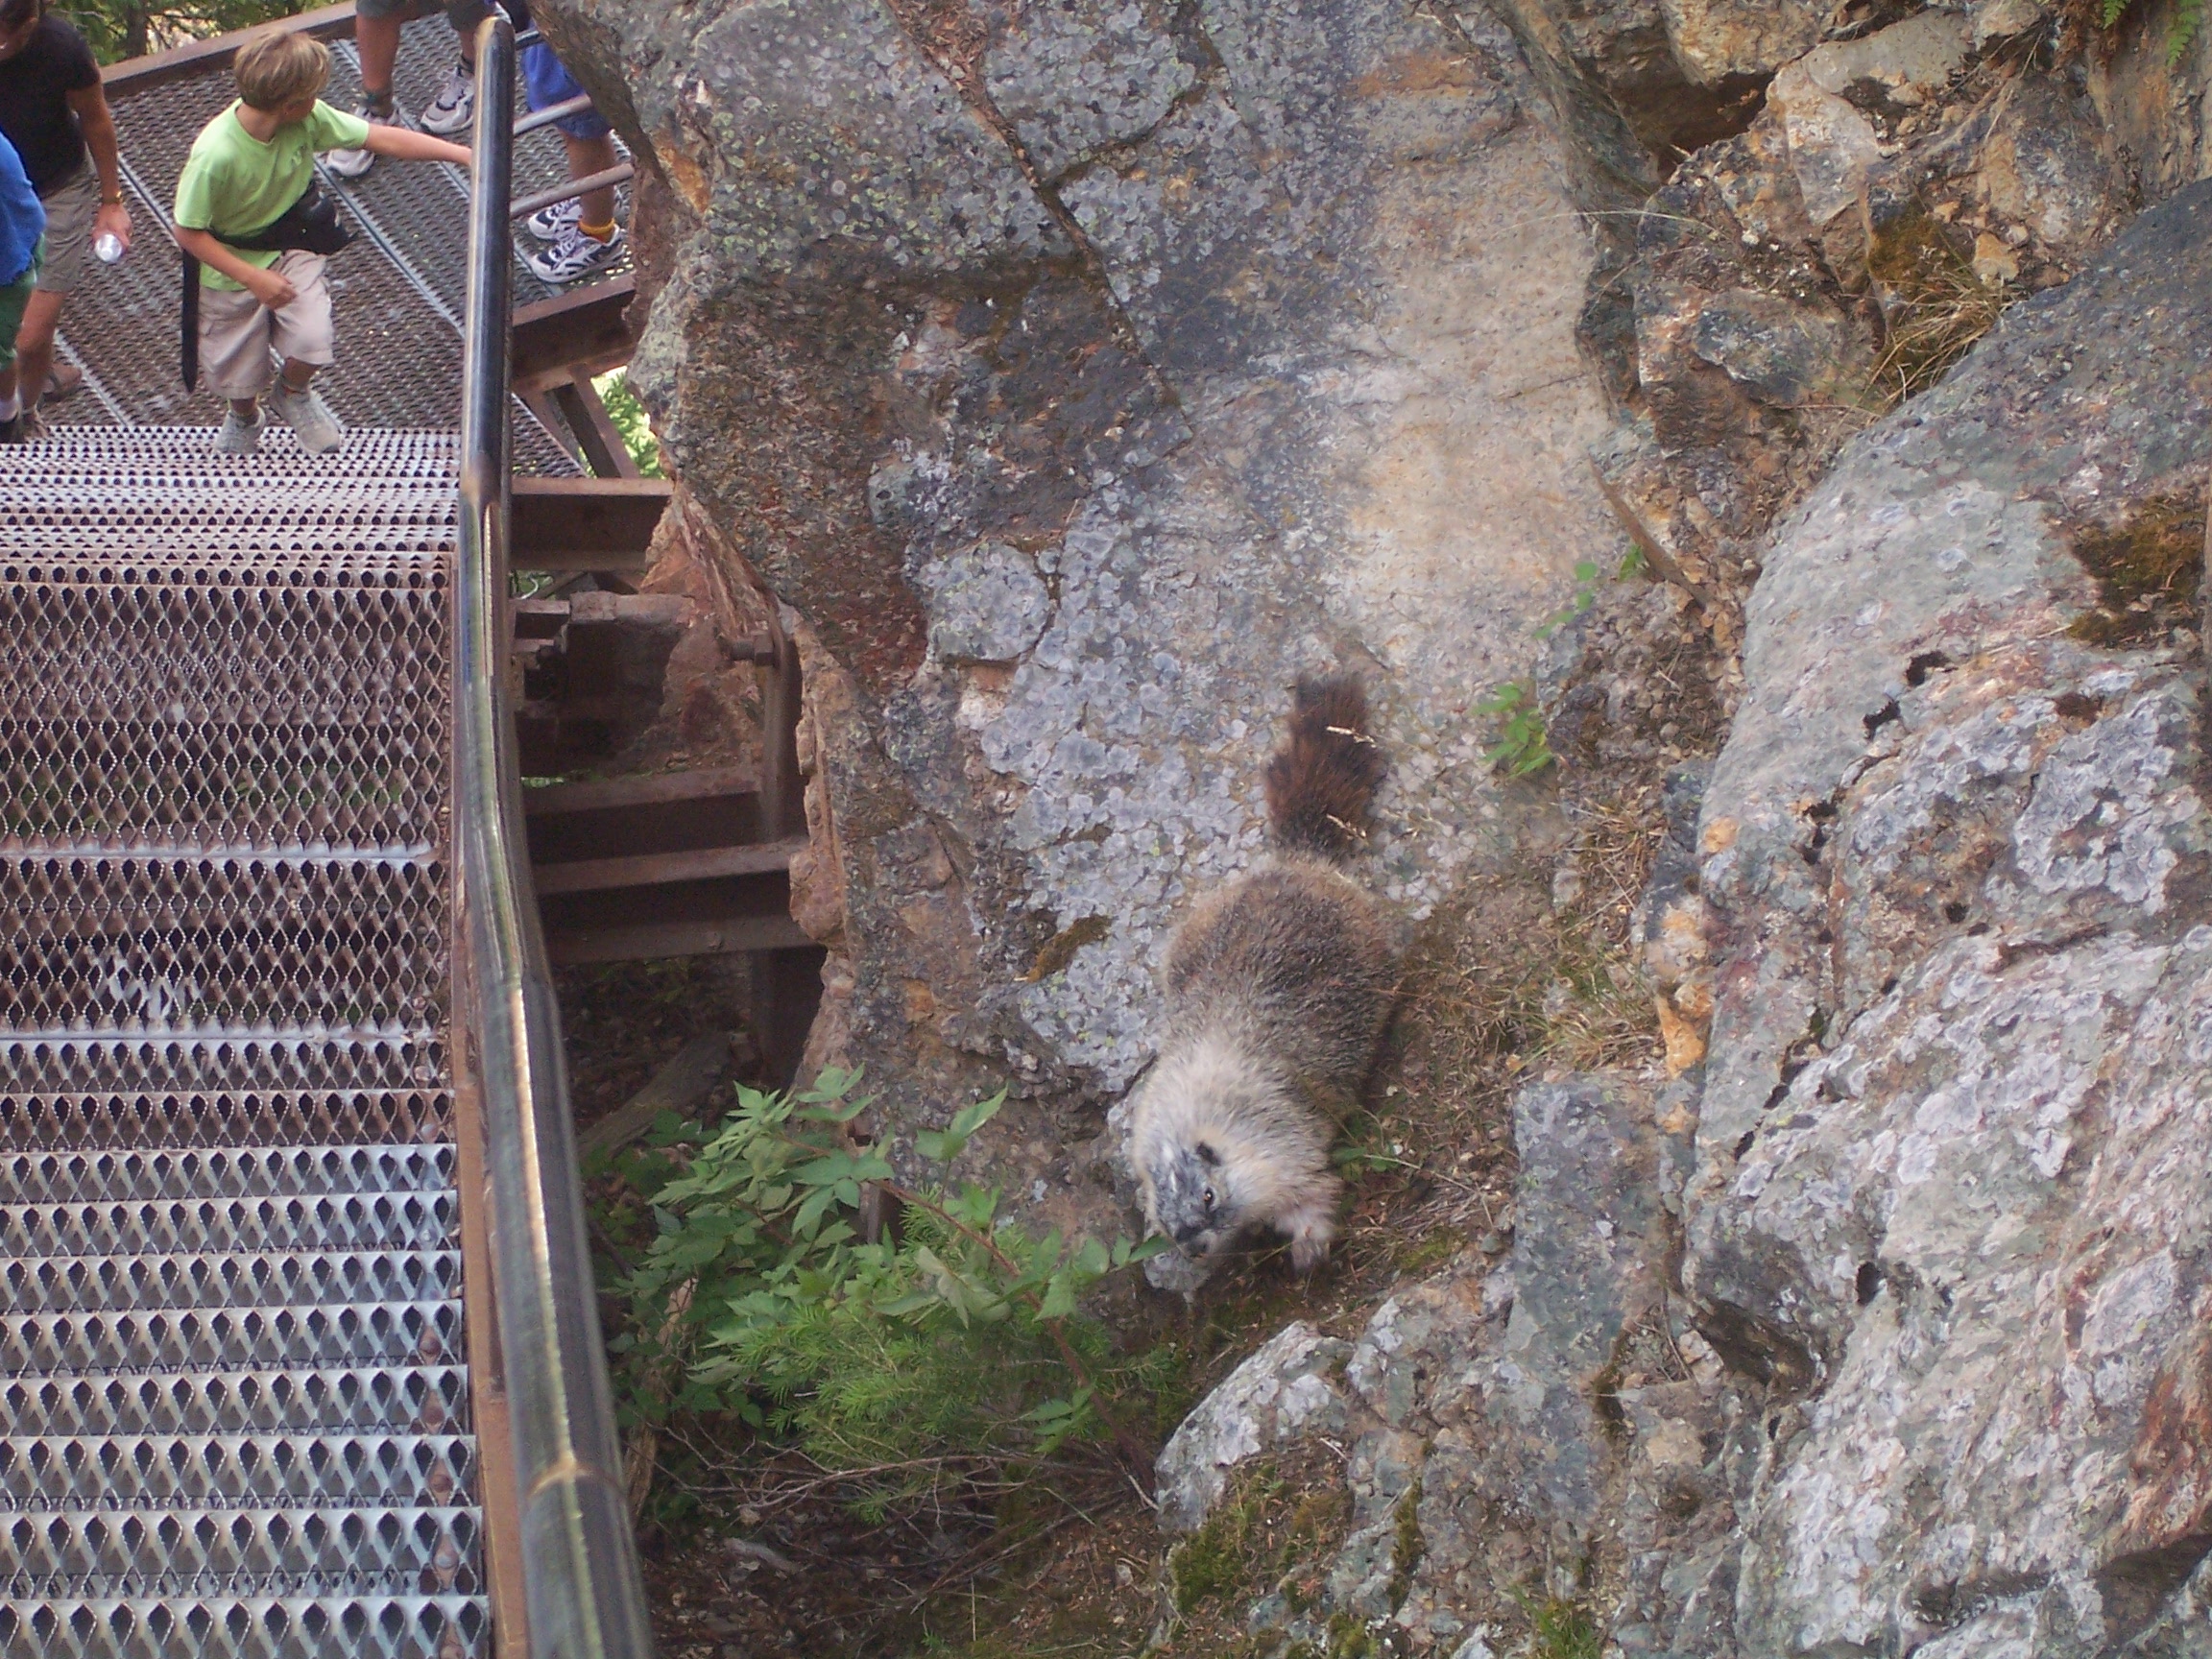 A marmot.